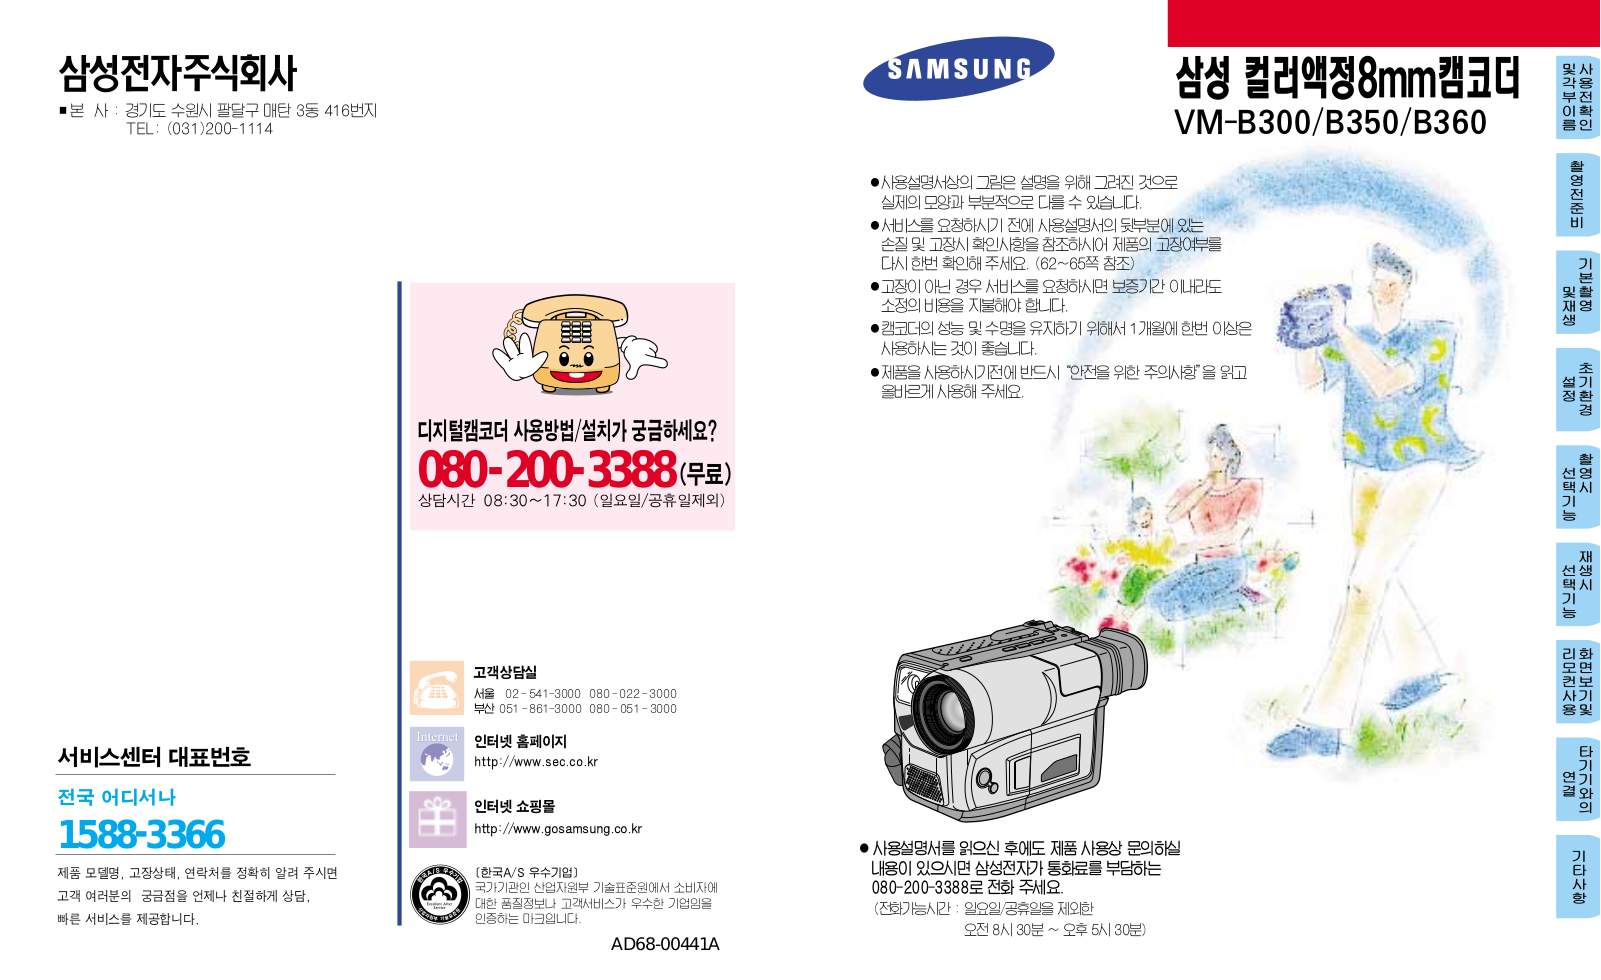 Samsung VM-B350, VM-B360, VM-B300 User Manual